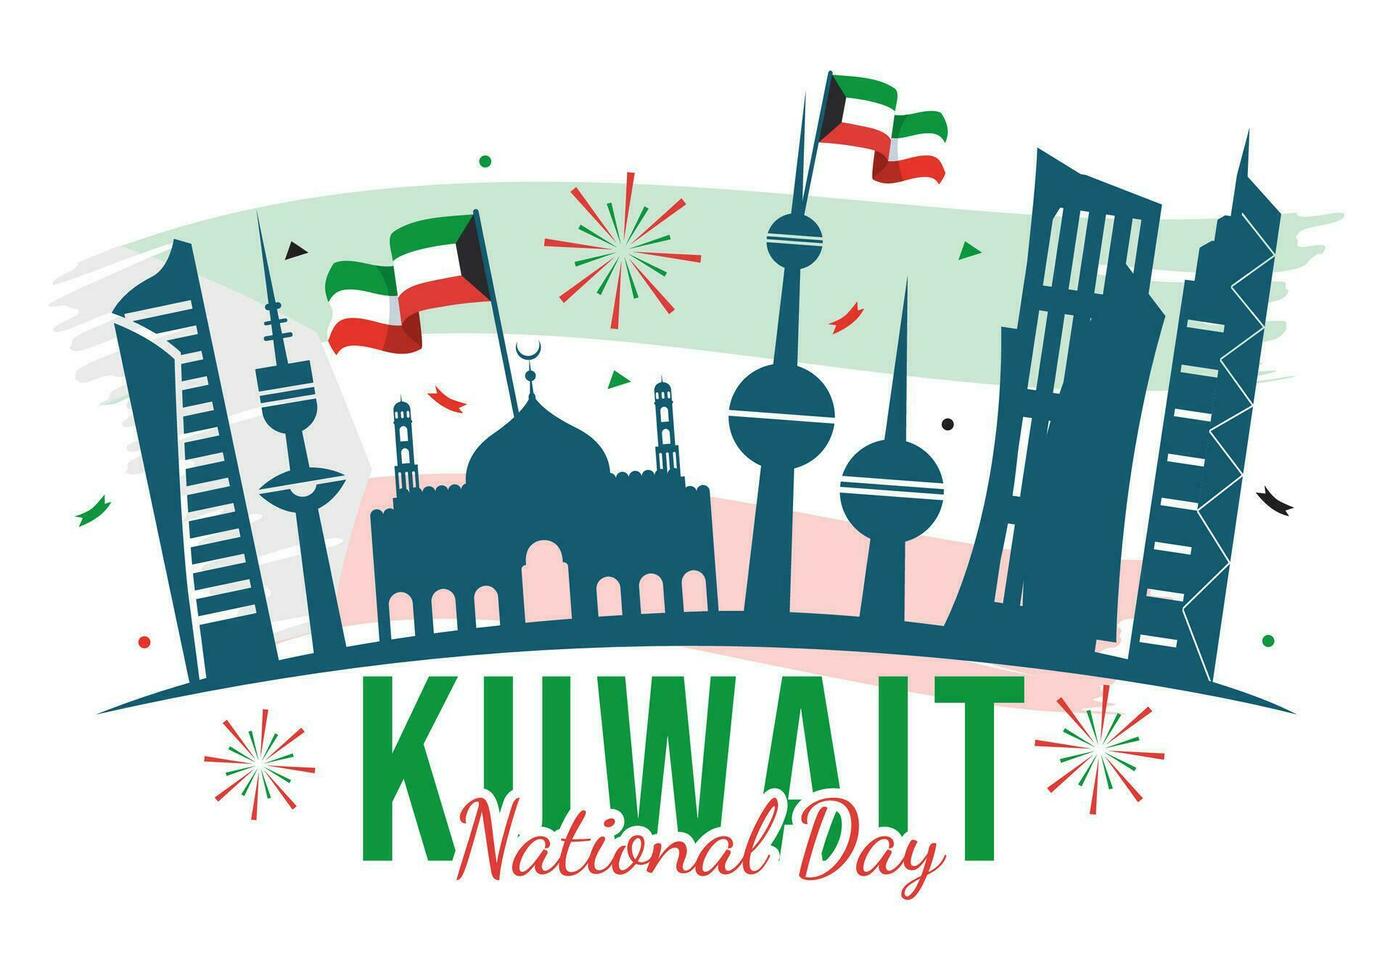 nazionale Kuwait giorno vettore illustrazione su febbraio 25 con punto di riferimento, agitando bandiera e indipendenza celebrazione nel piatto cartone animato sfondo